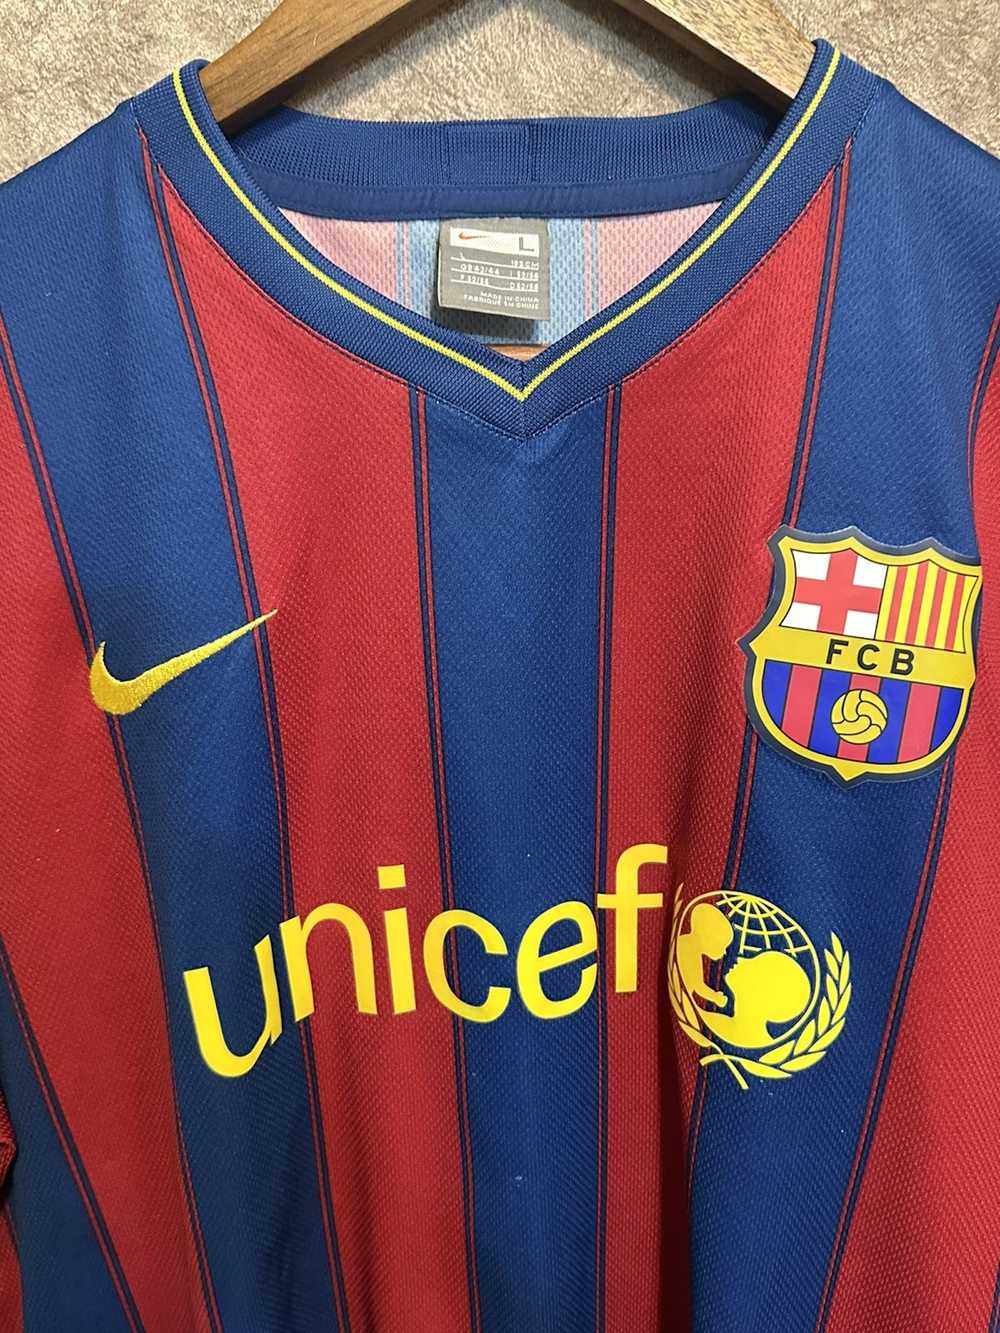 F.C. Barcelona × Soccer Jersey × Vintage Barcelon… - image 3